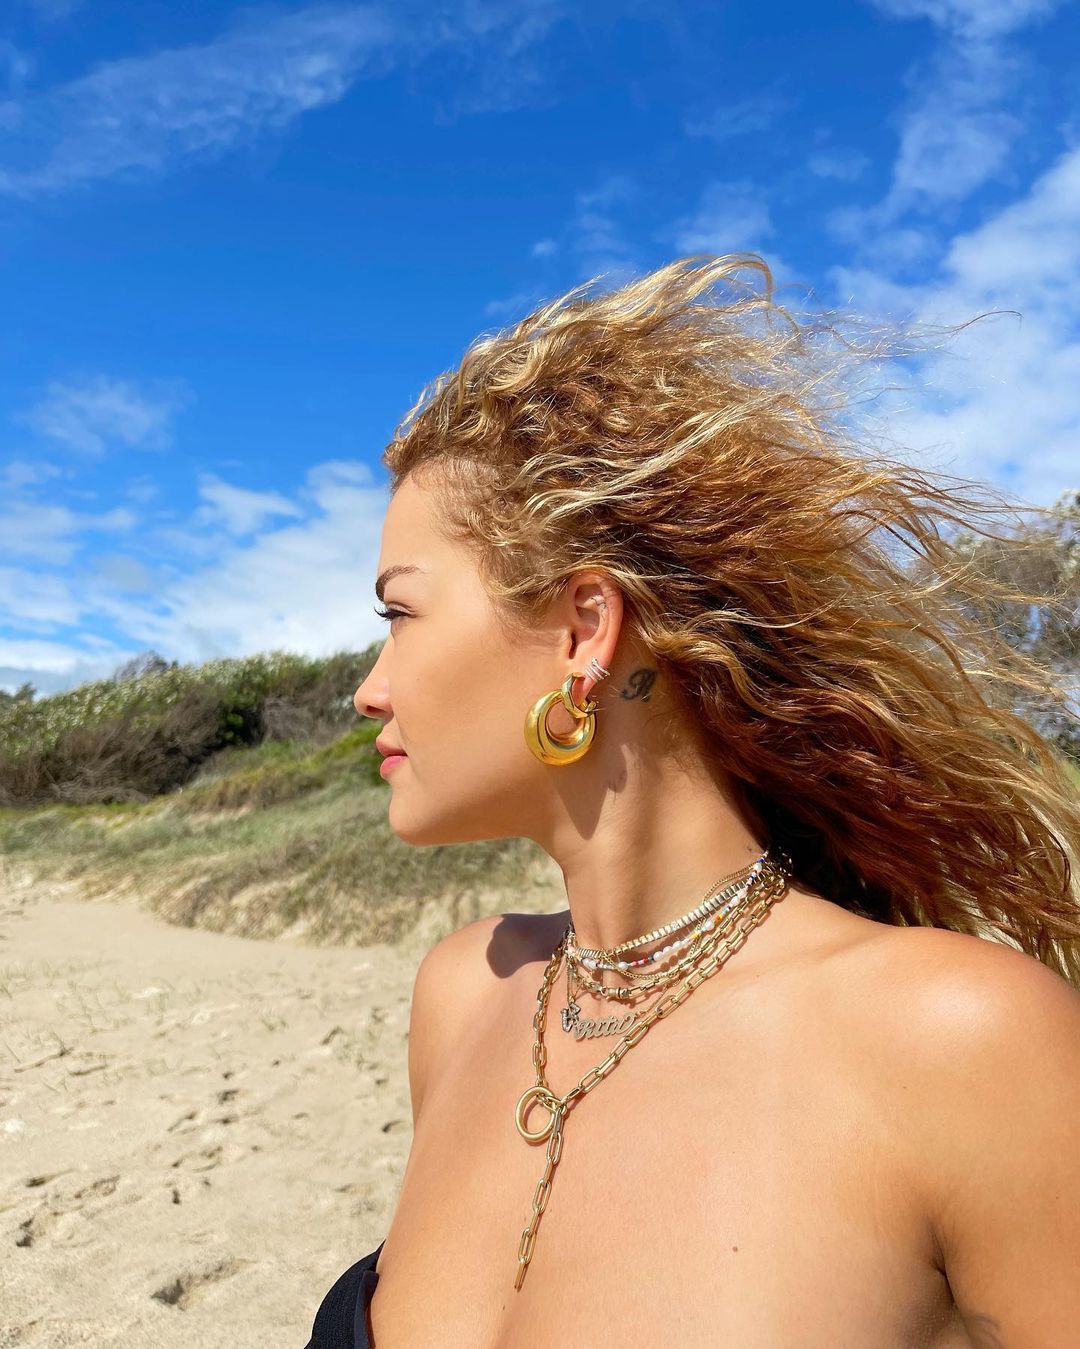 PHOTOS Rita Ora a trouv une plage noire! - Photo 35